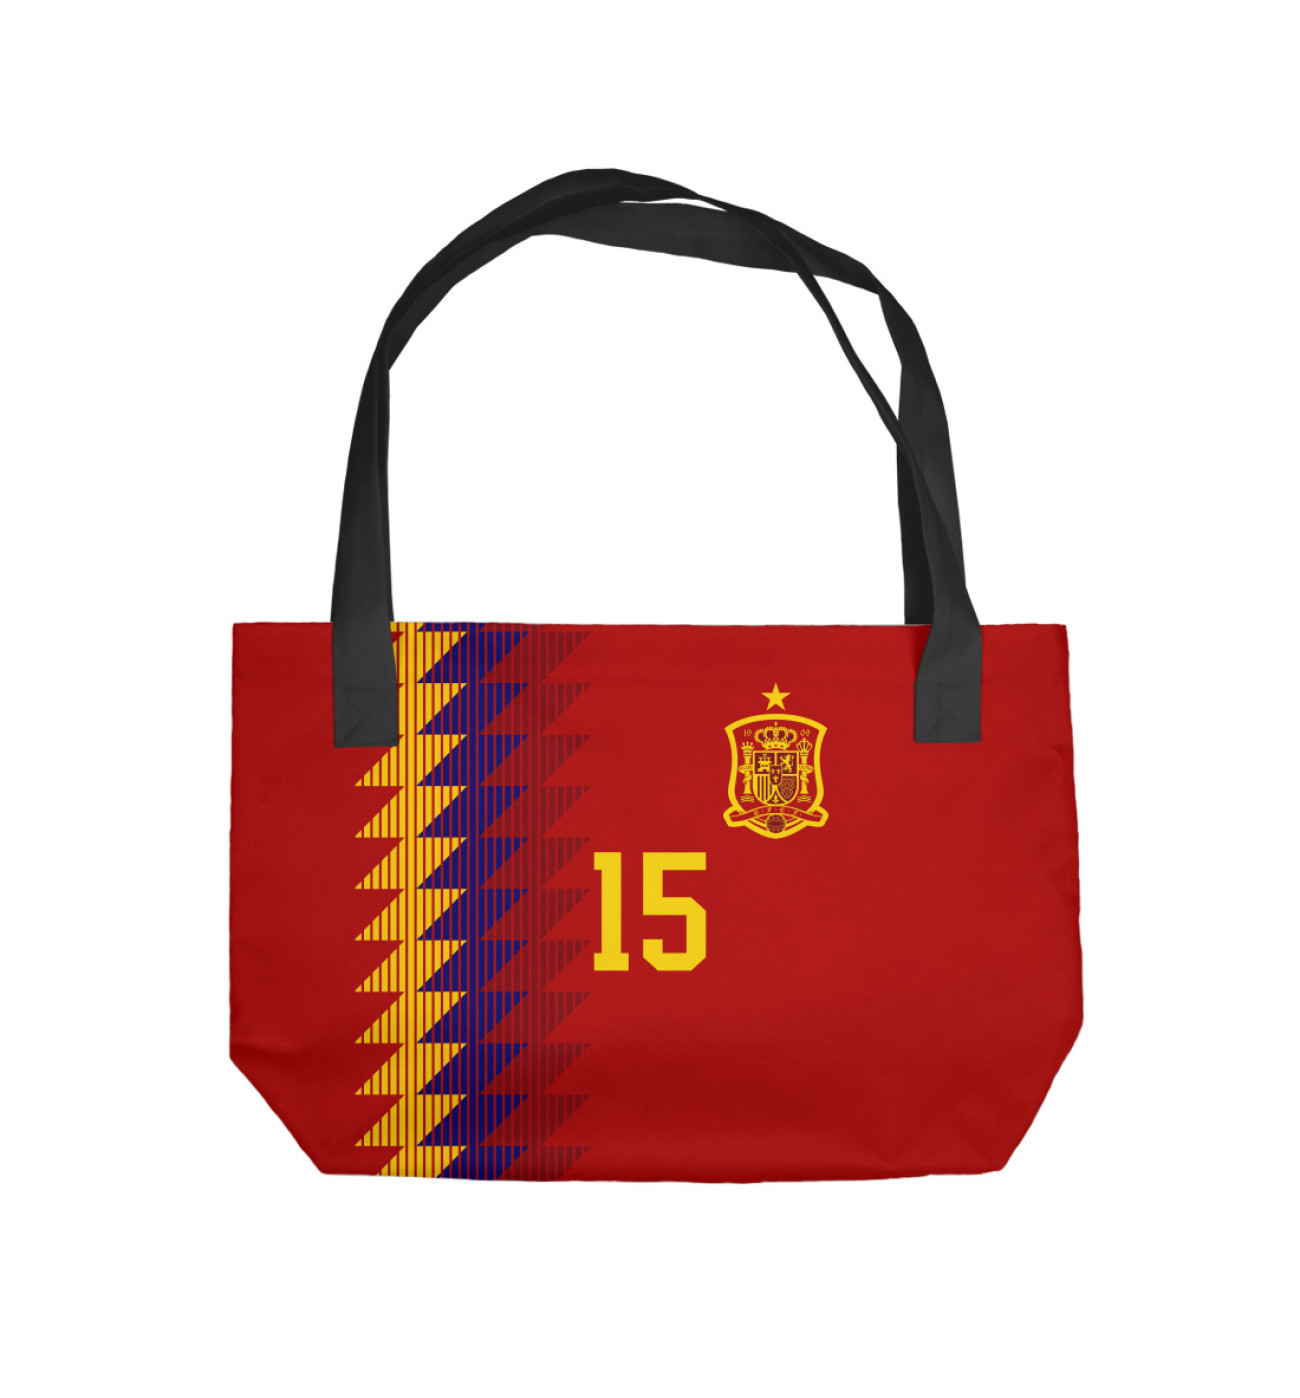 Пляжная сумка Серхио Рамос - Сборная Испании, артикул: FLT-690520-sup